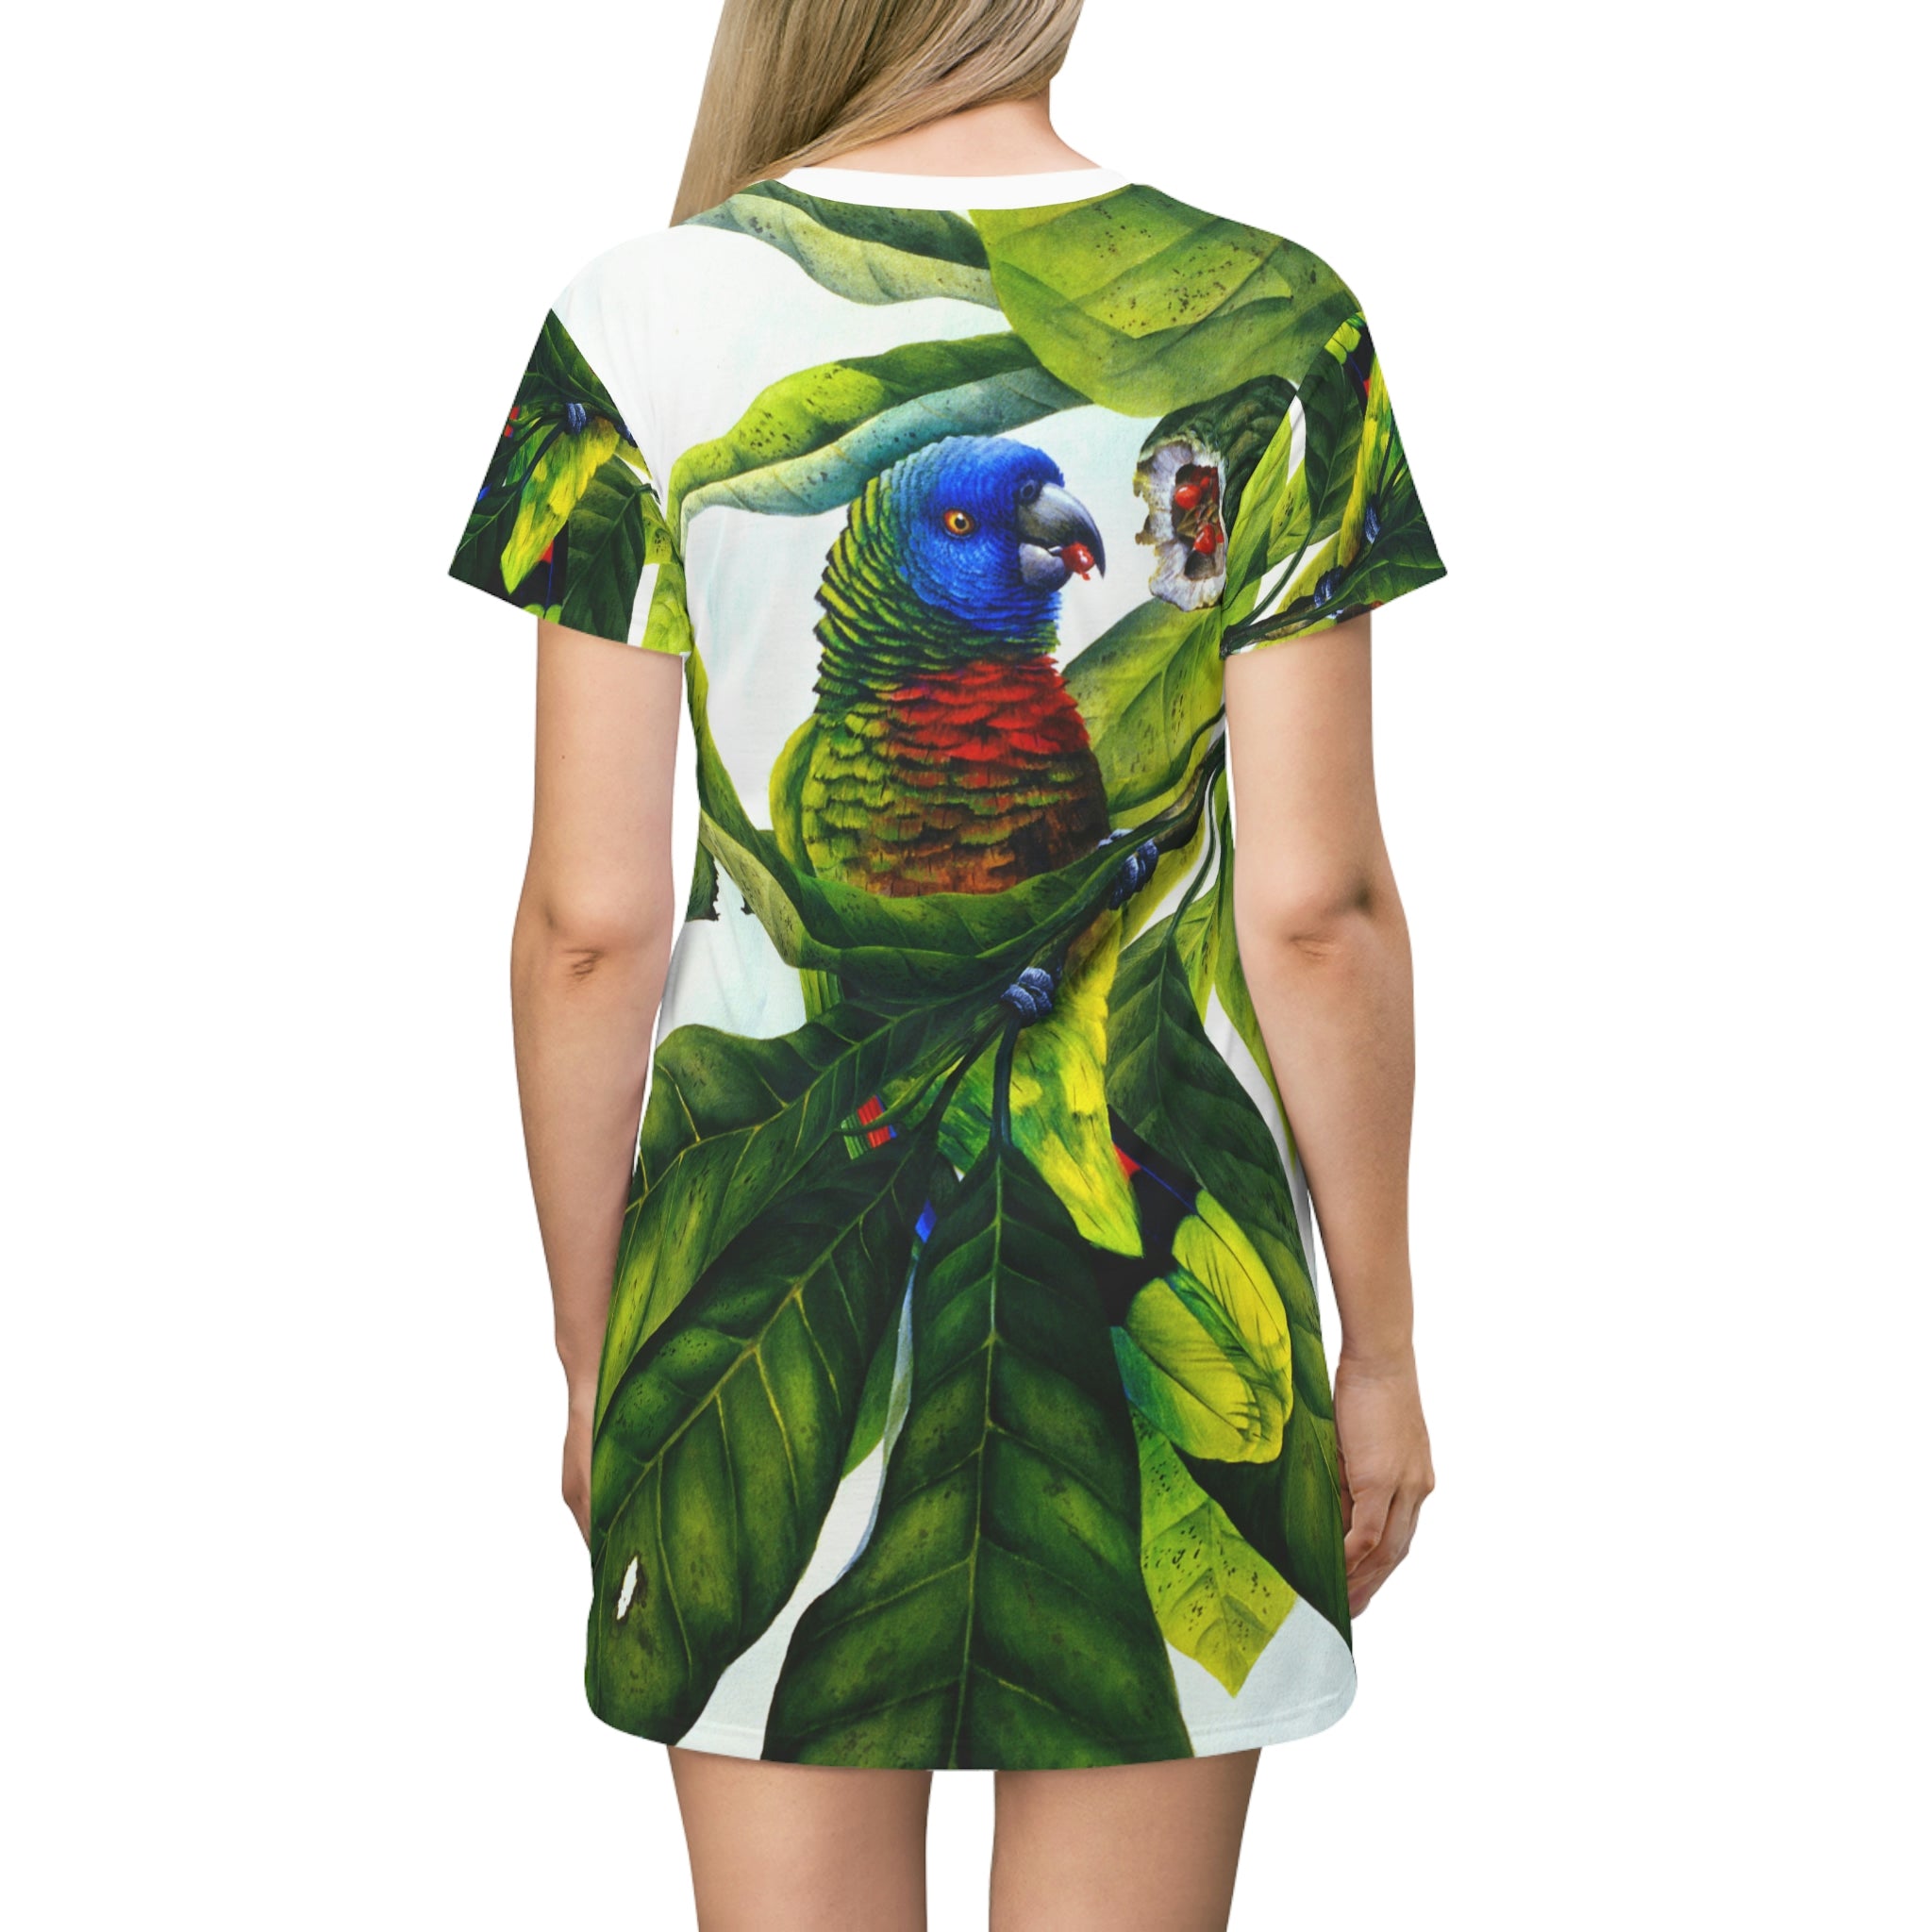 St Lucia Parrot, All Over Print T-Shirt Dress, Women's T-shirt dress, Beach dress, AOP dress, Wearable art, Original artwork